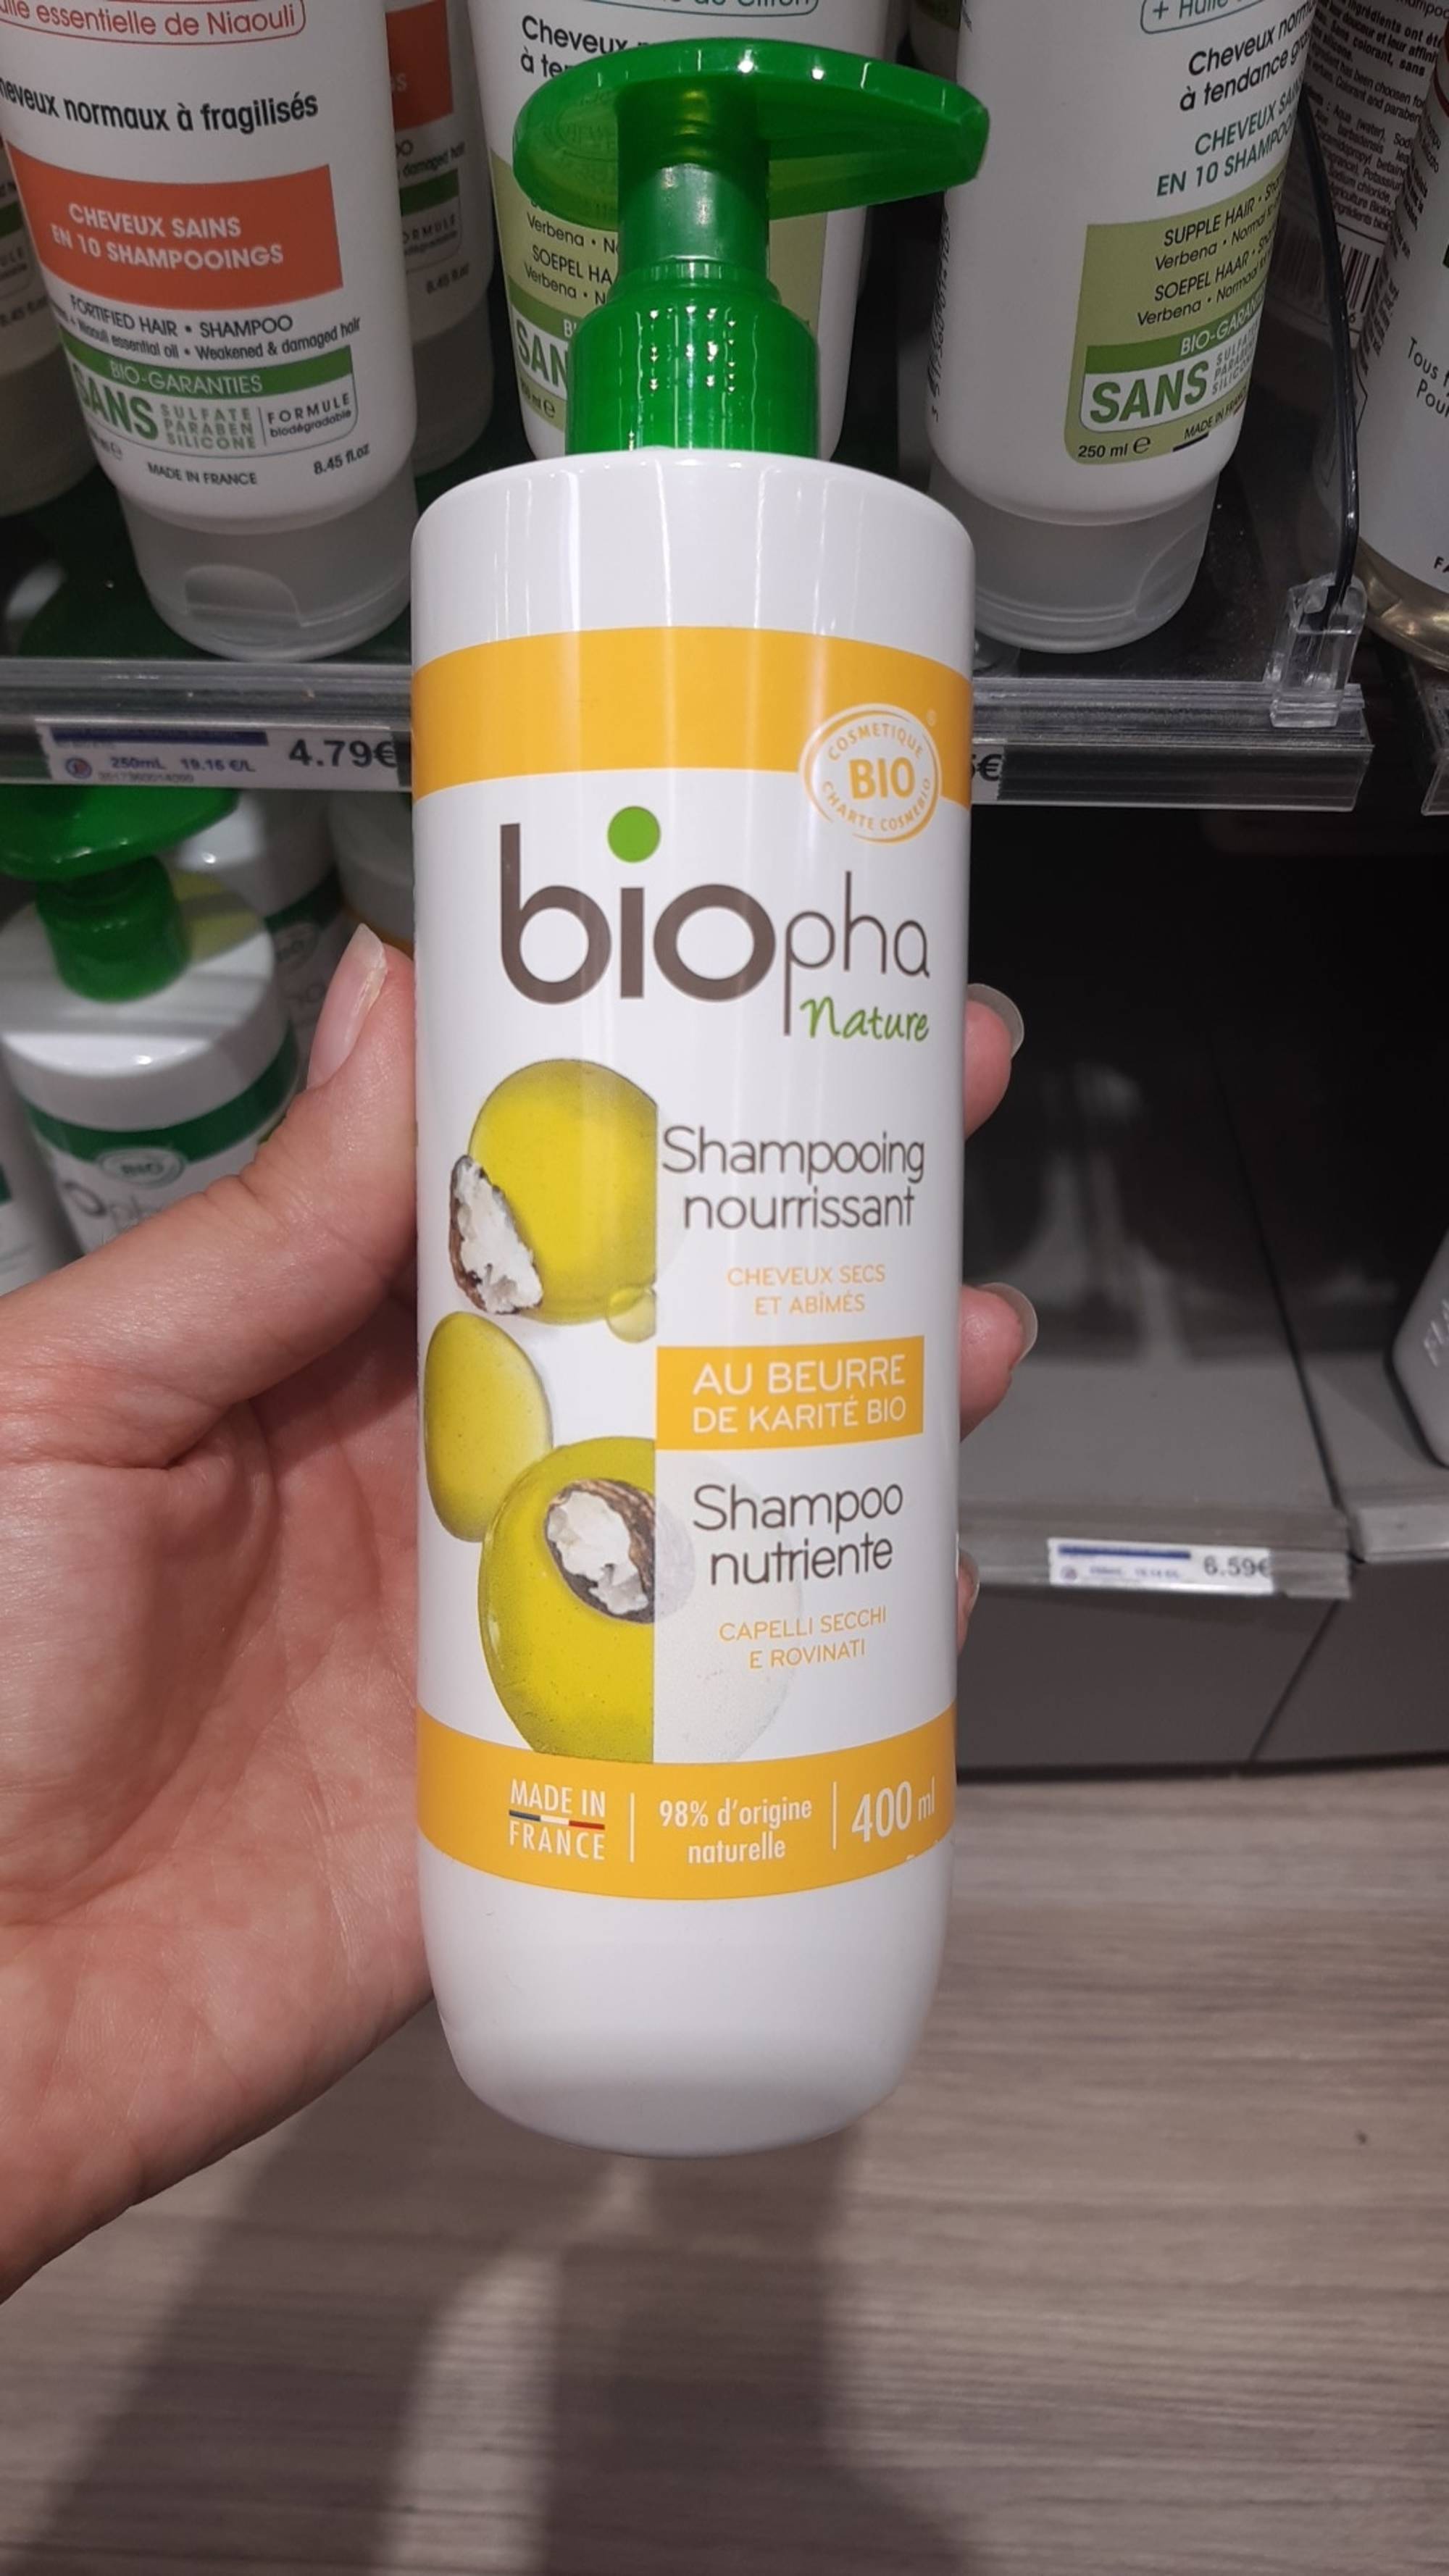 BIOPHA NATURE - Shampooing nourrissant au Beurre de Karité bio